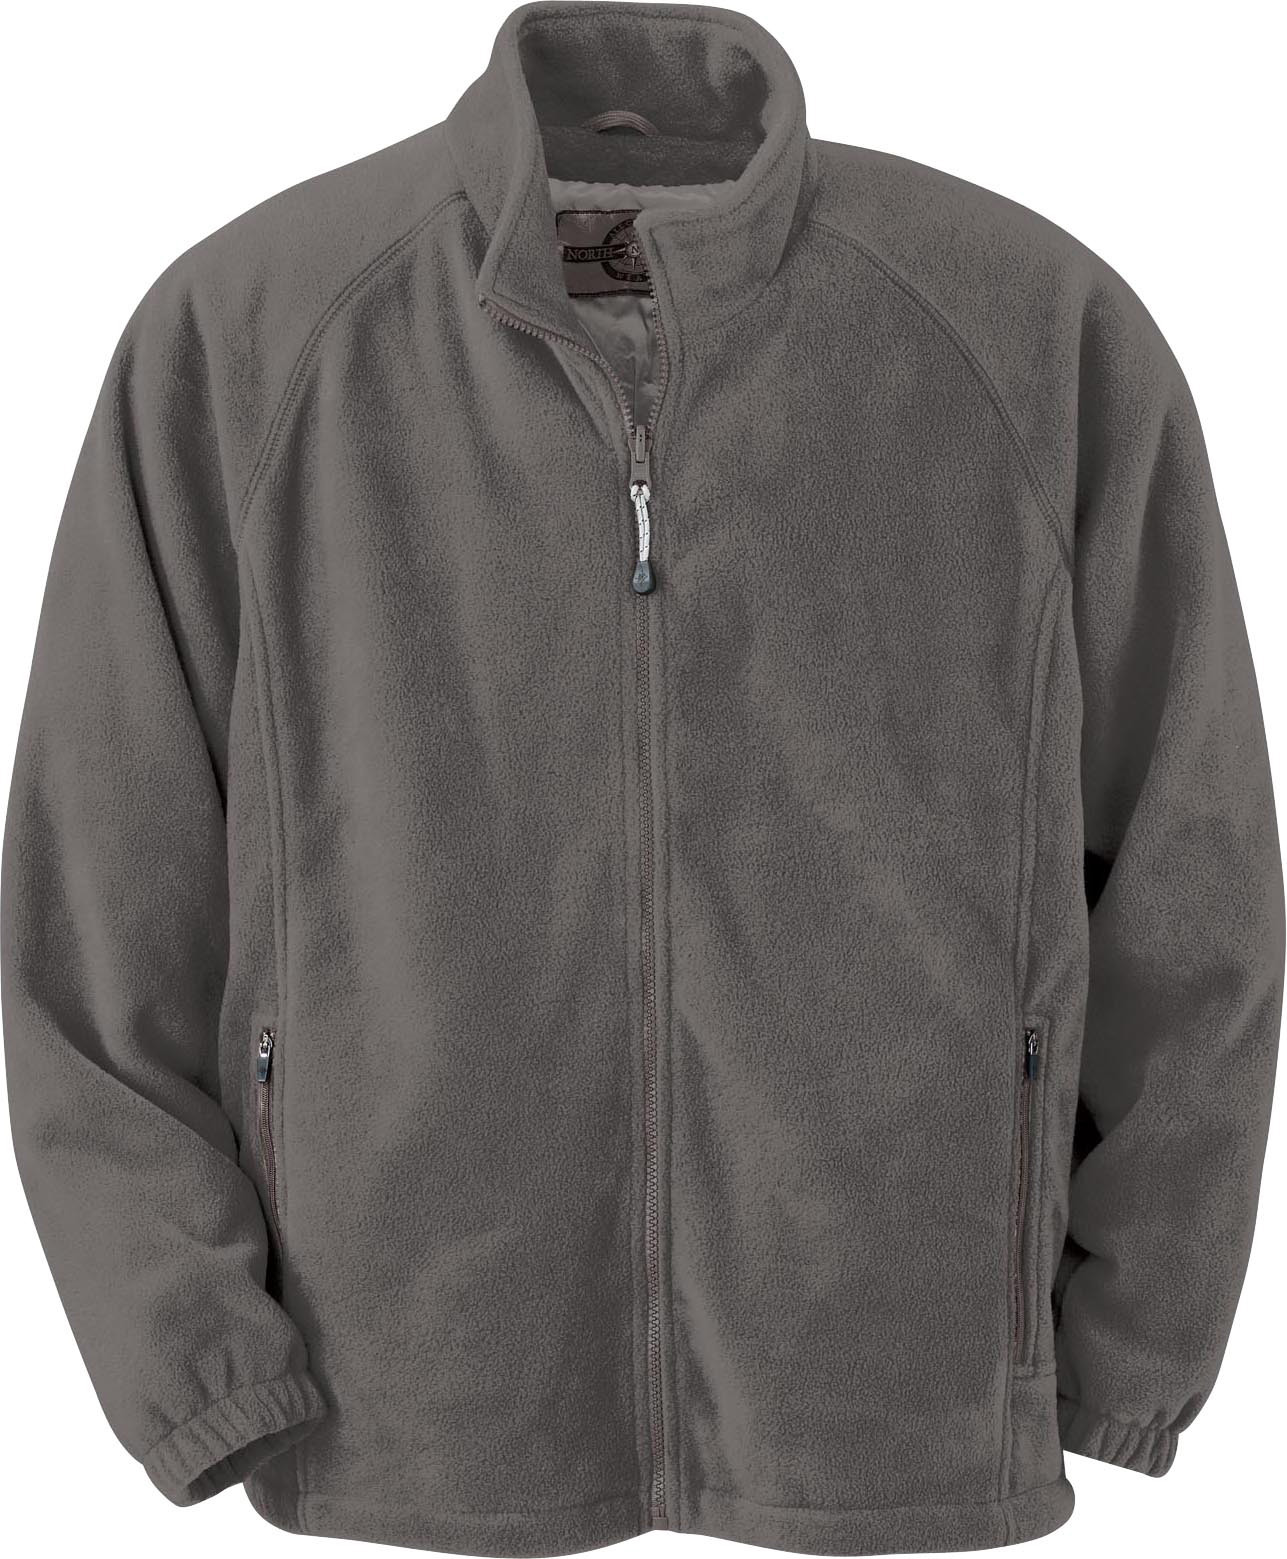 Ash City Poly Fleece 88108 - Men's Interactive Fleece Jacket